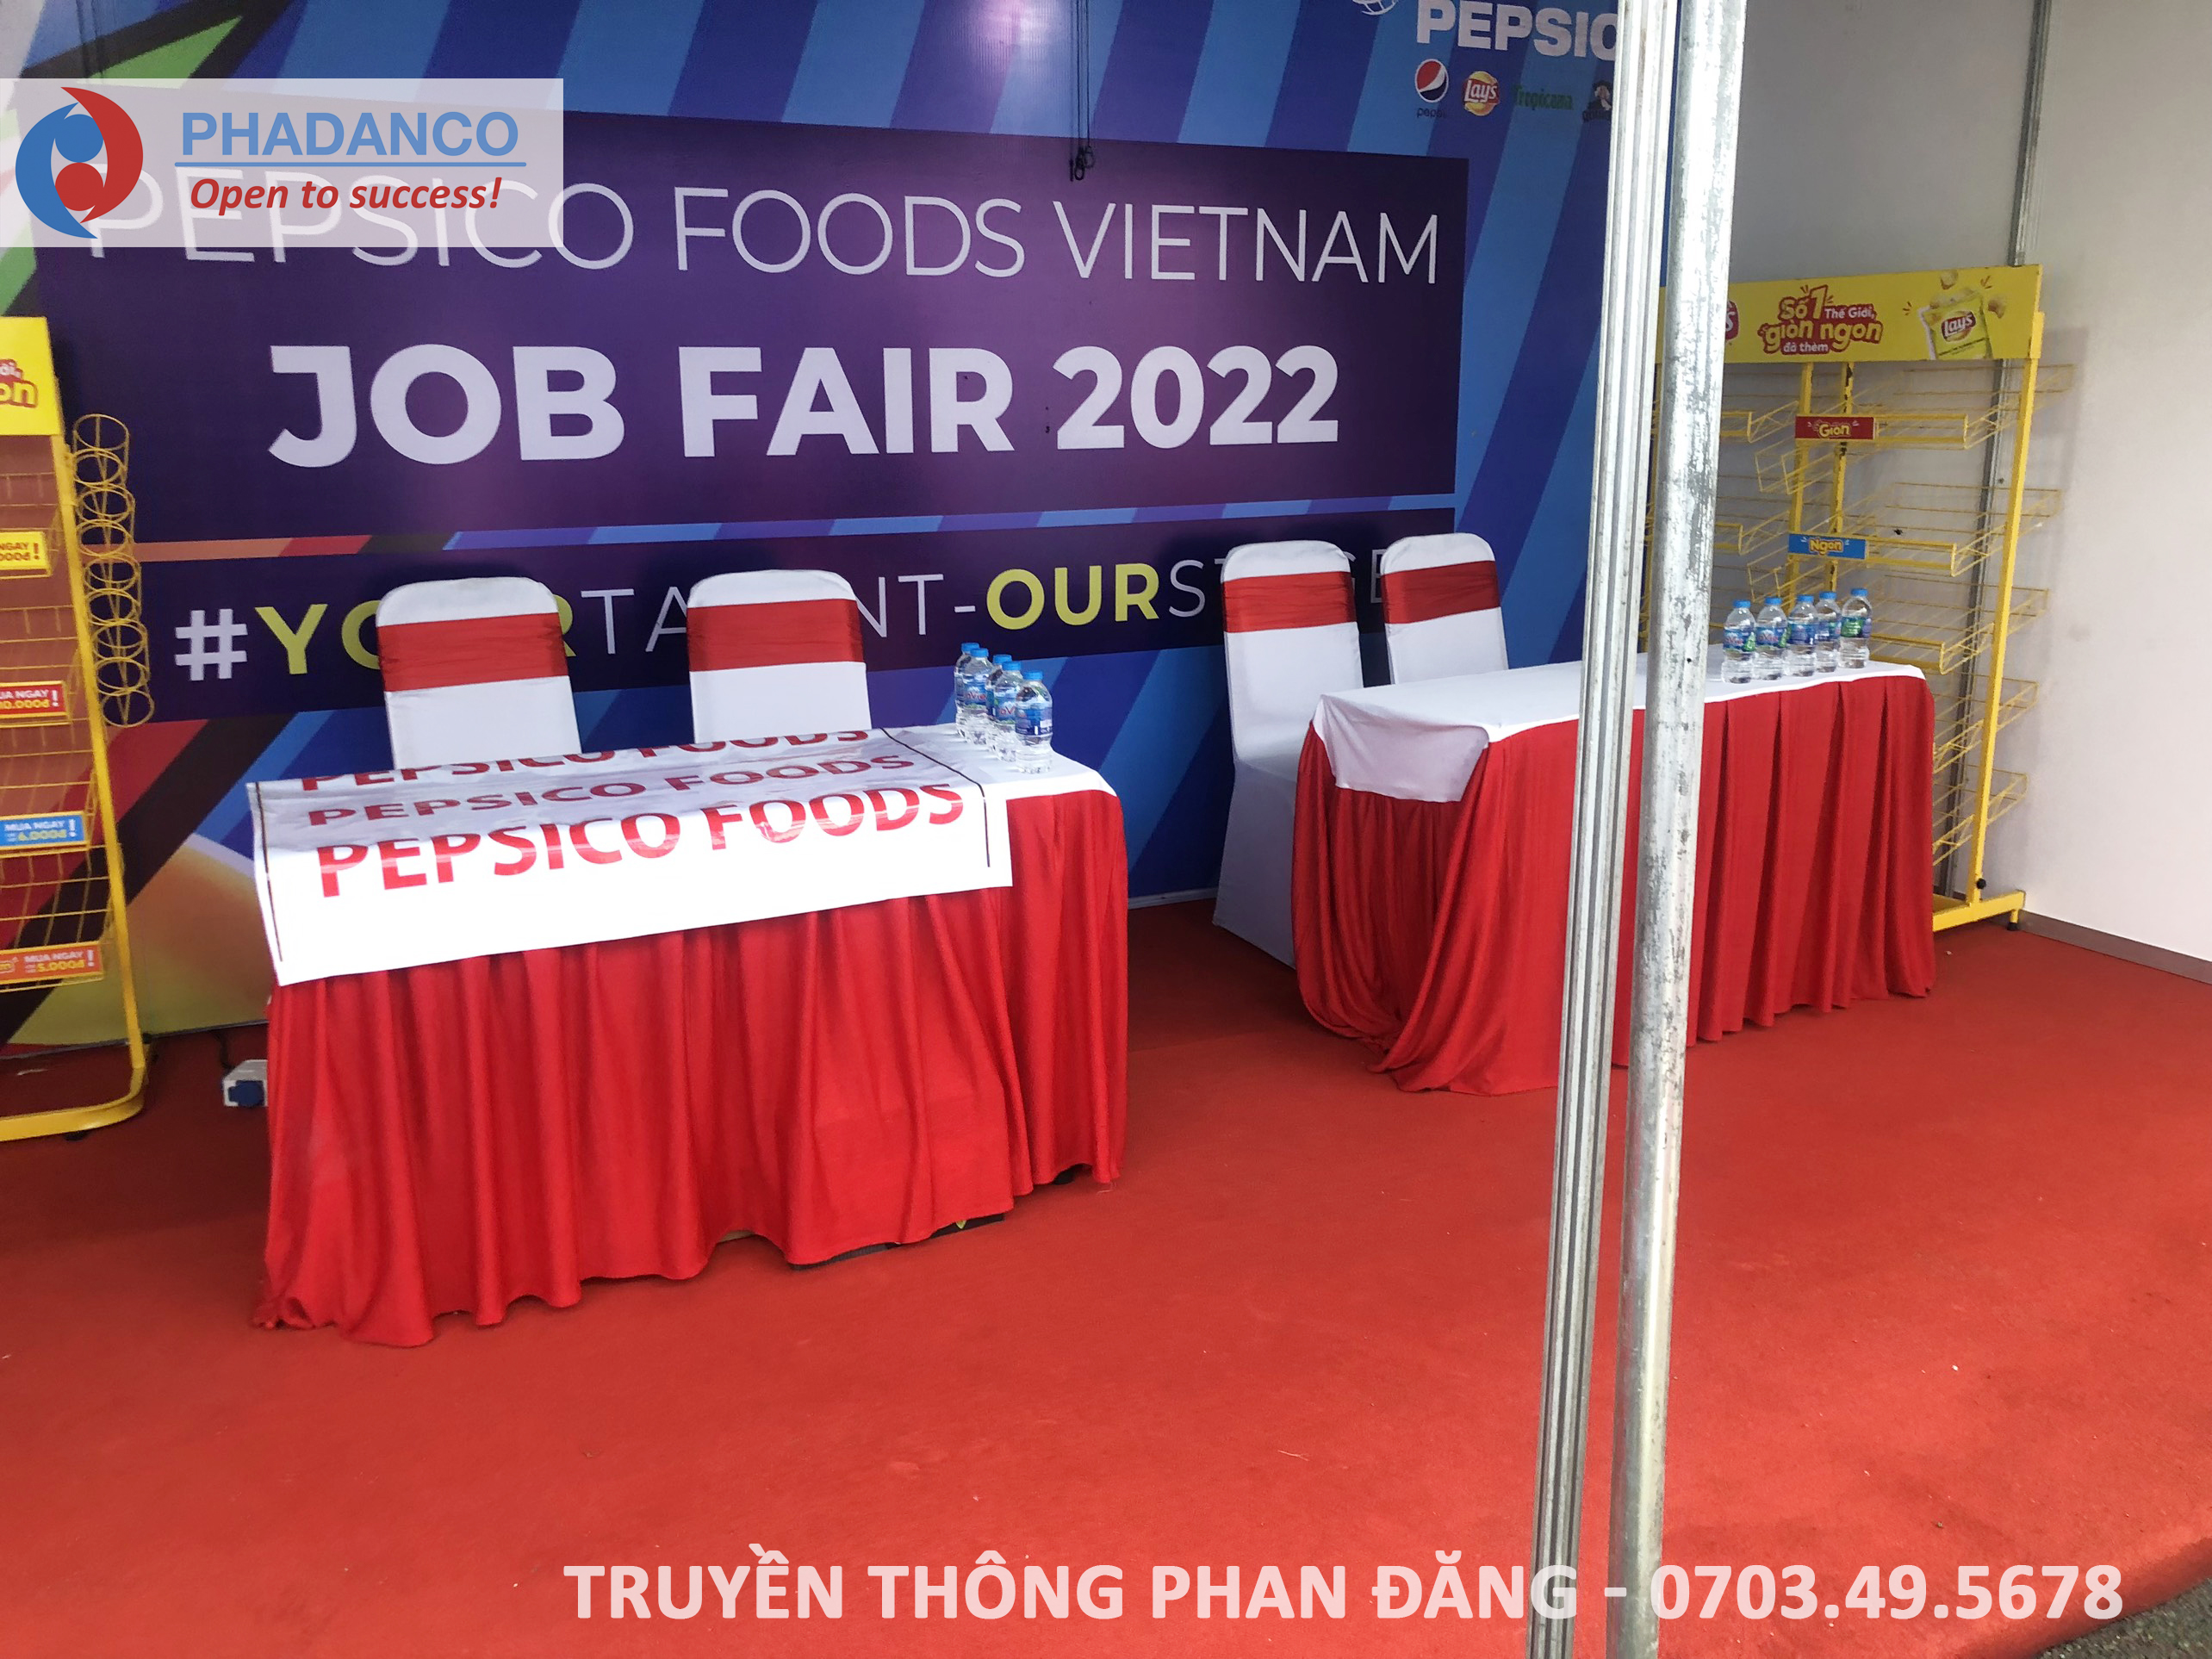 Tư vấn việc làm tại gian hàng công ty pescico foods VietNam